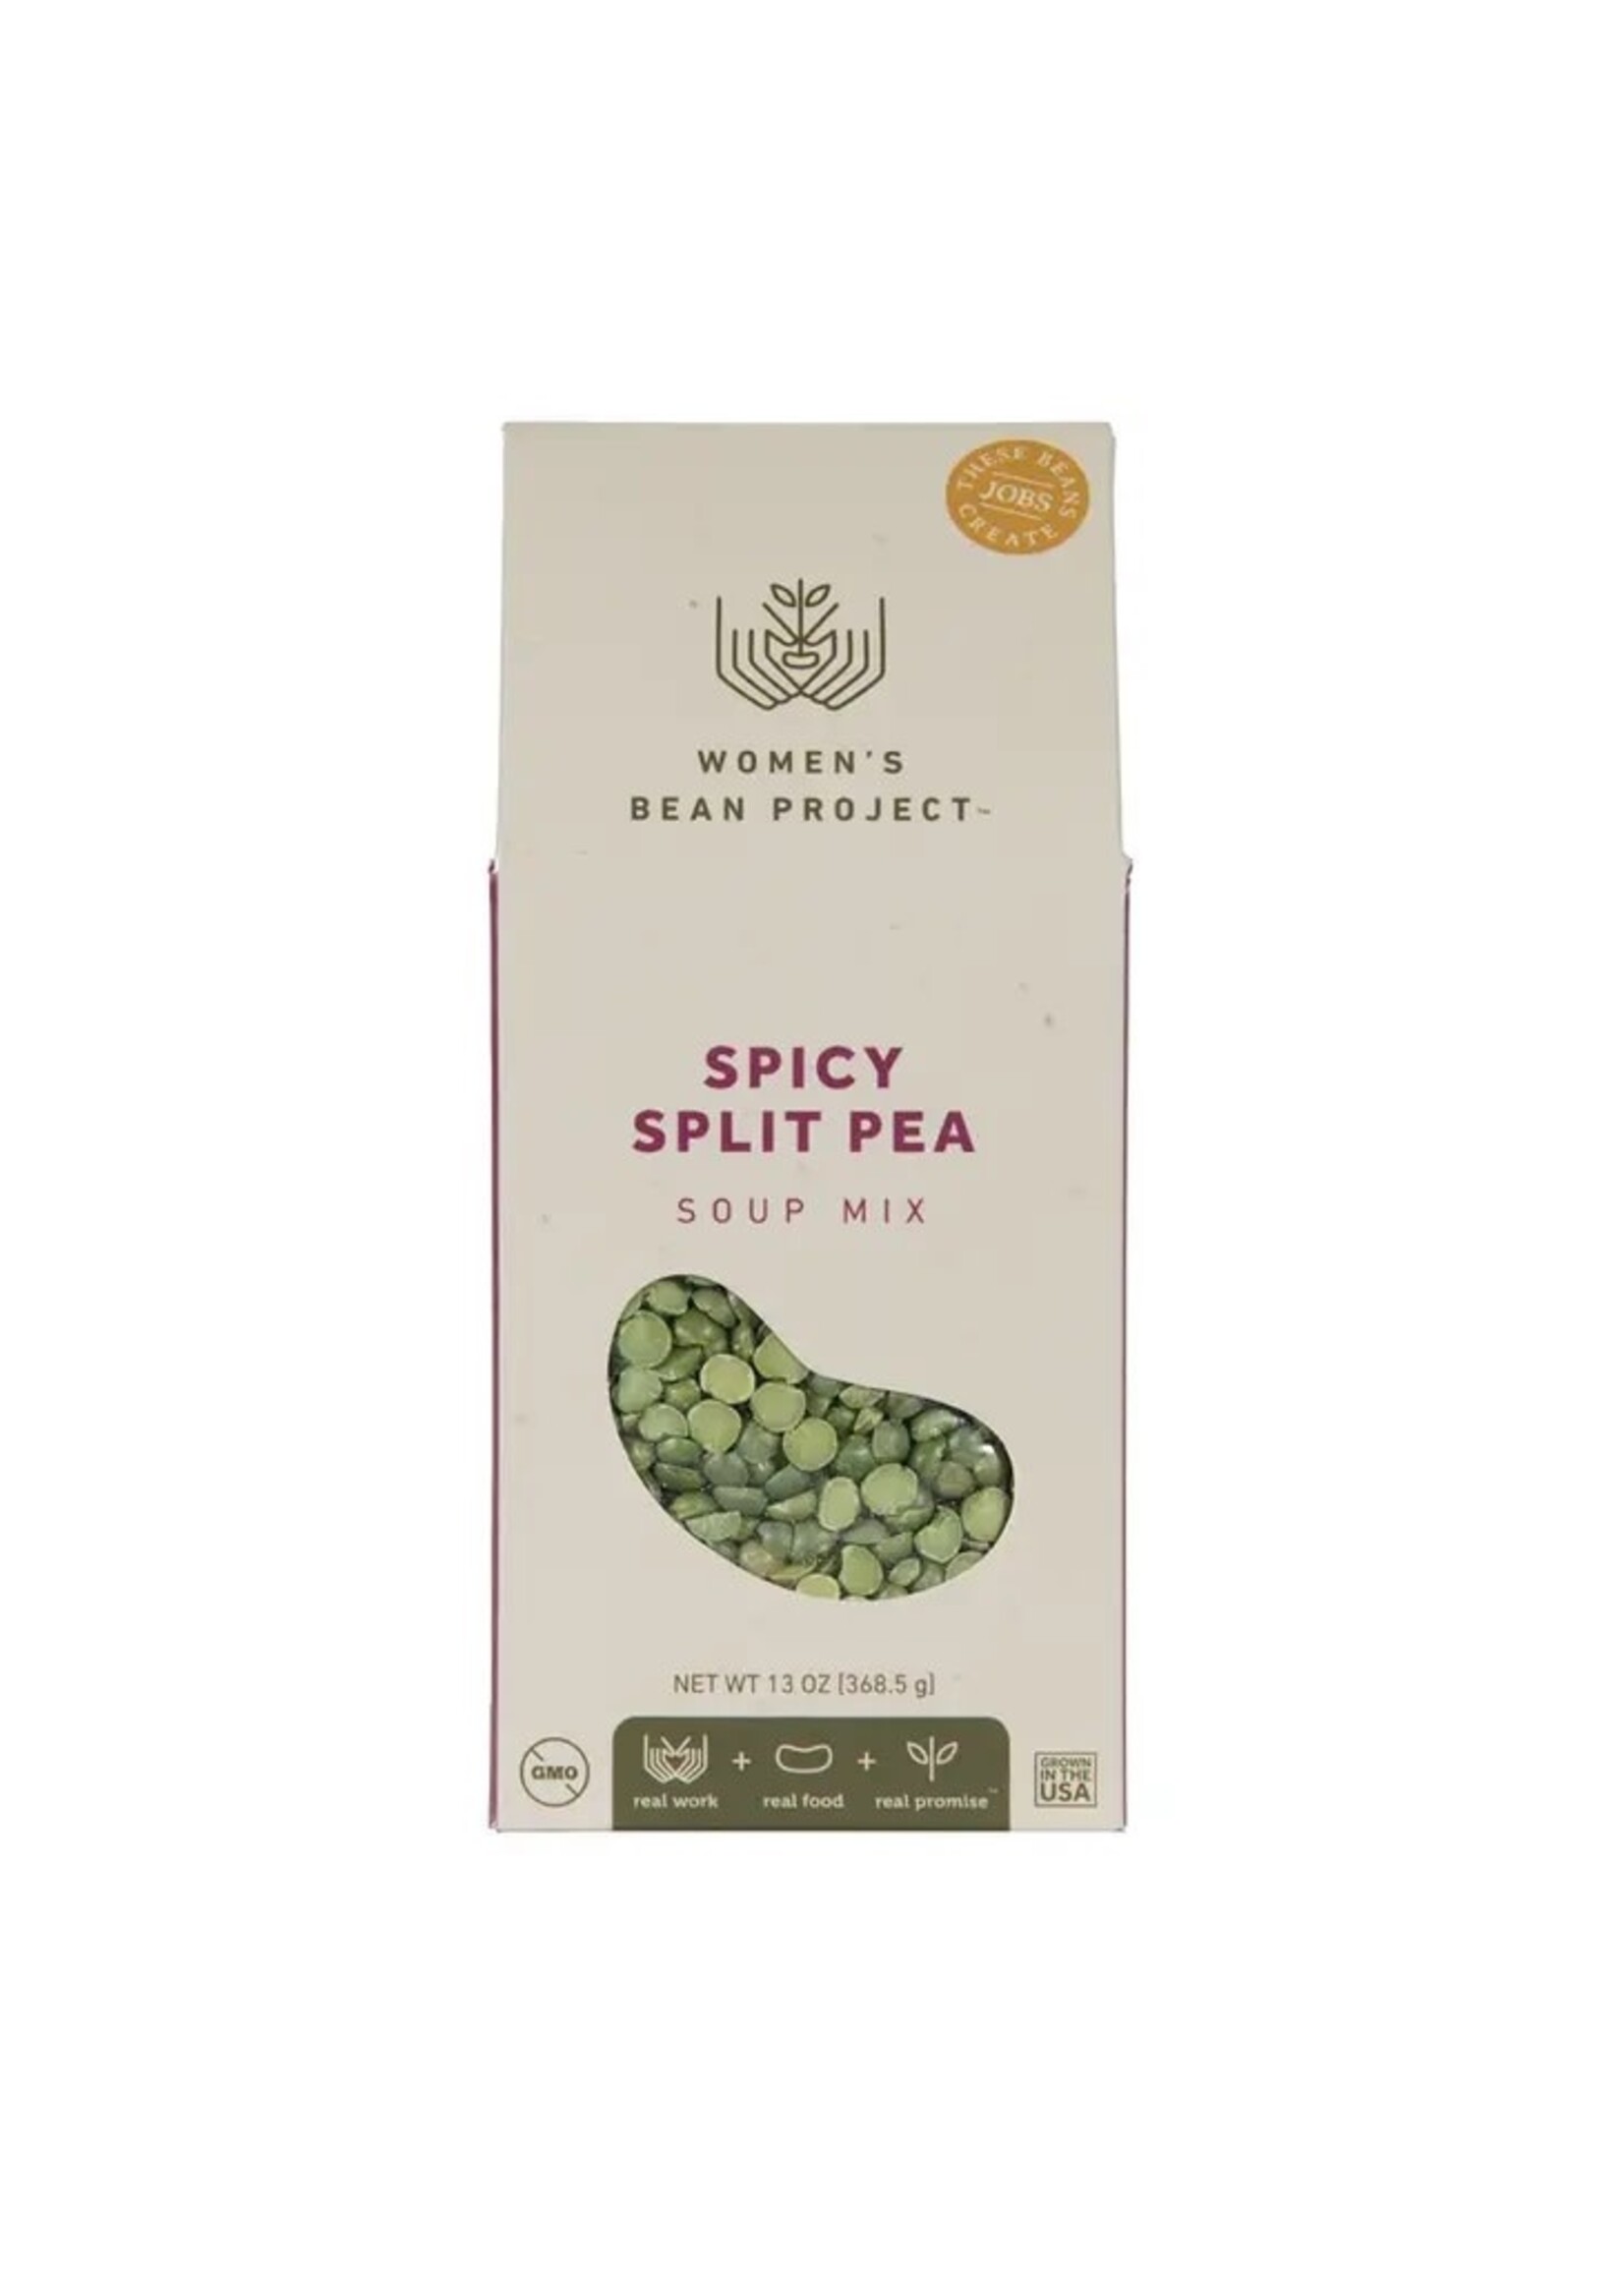 Soup Mix - Spicy Split Pea.